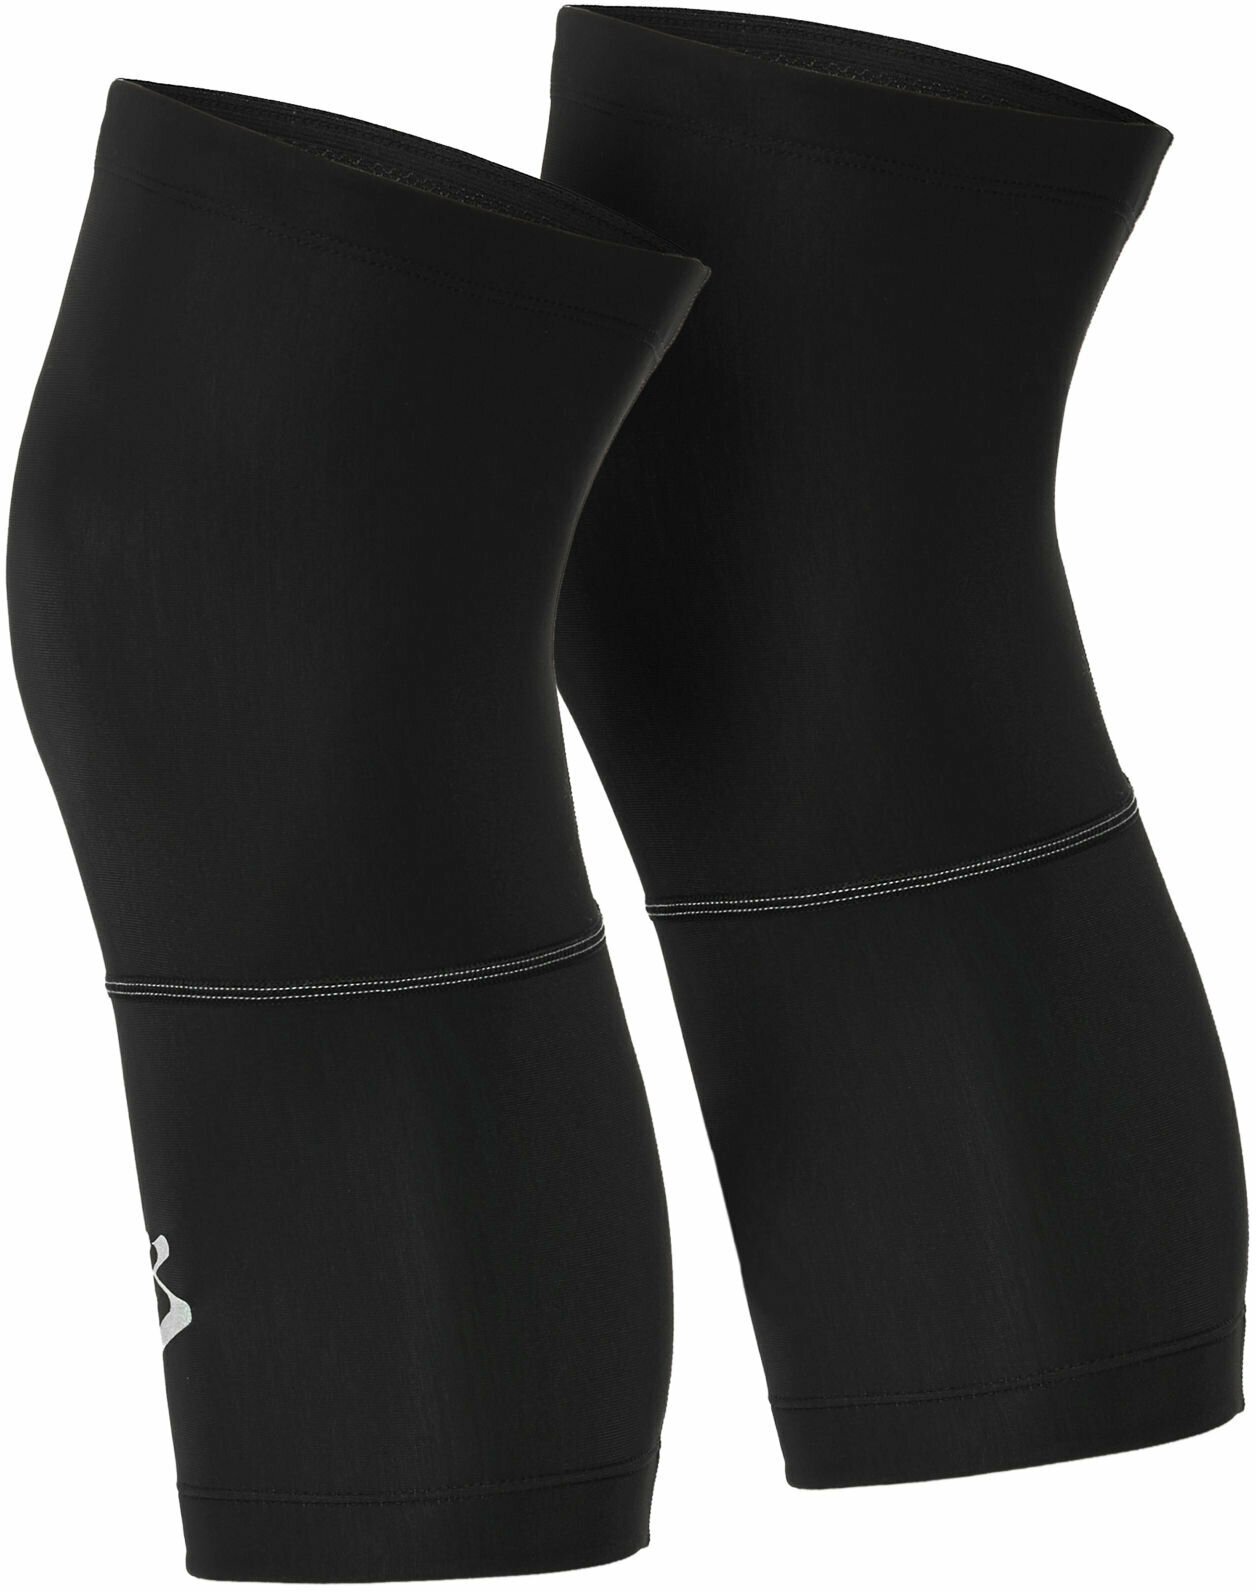 Knäskydd för cykling Spiuk Anatomic Knee Warmers Black S/M Knäskydd för cykling